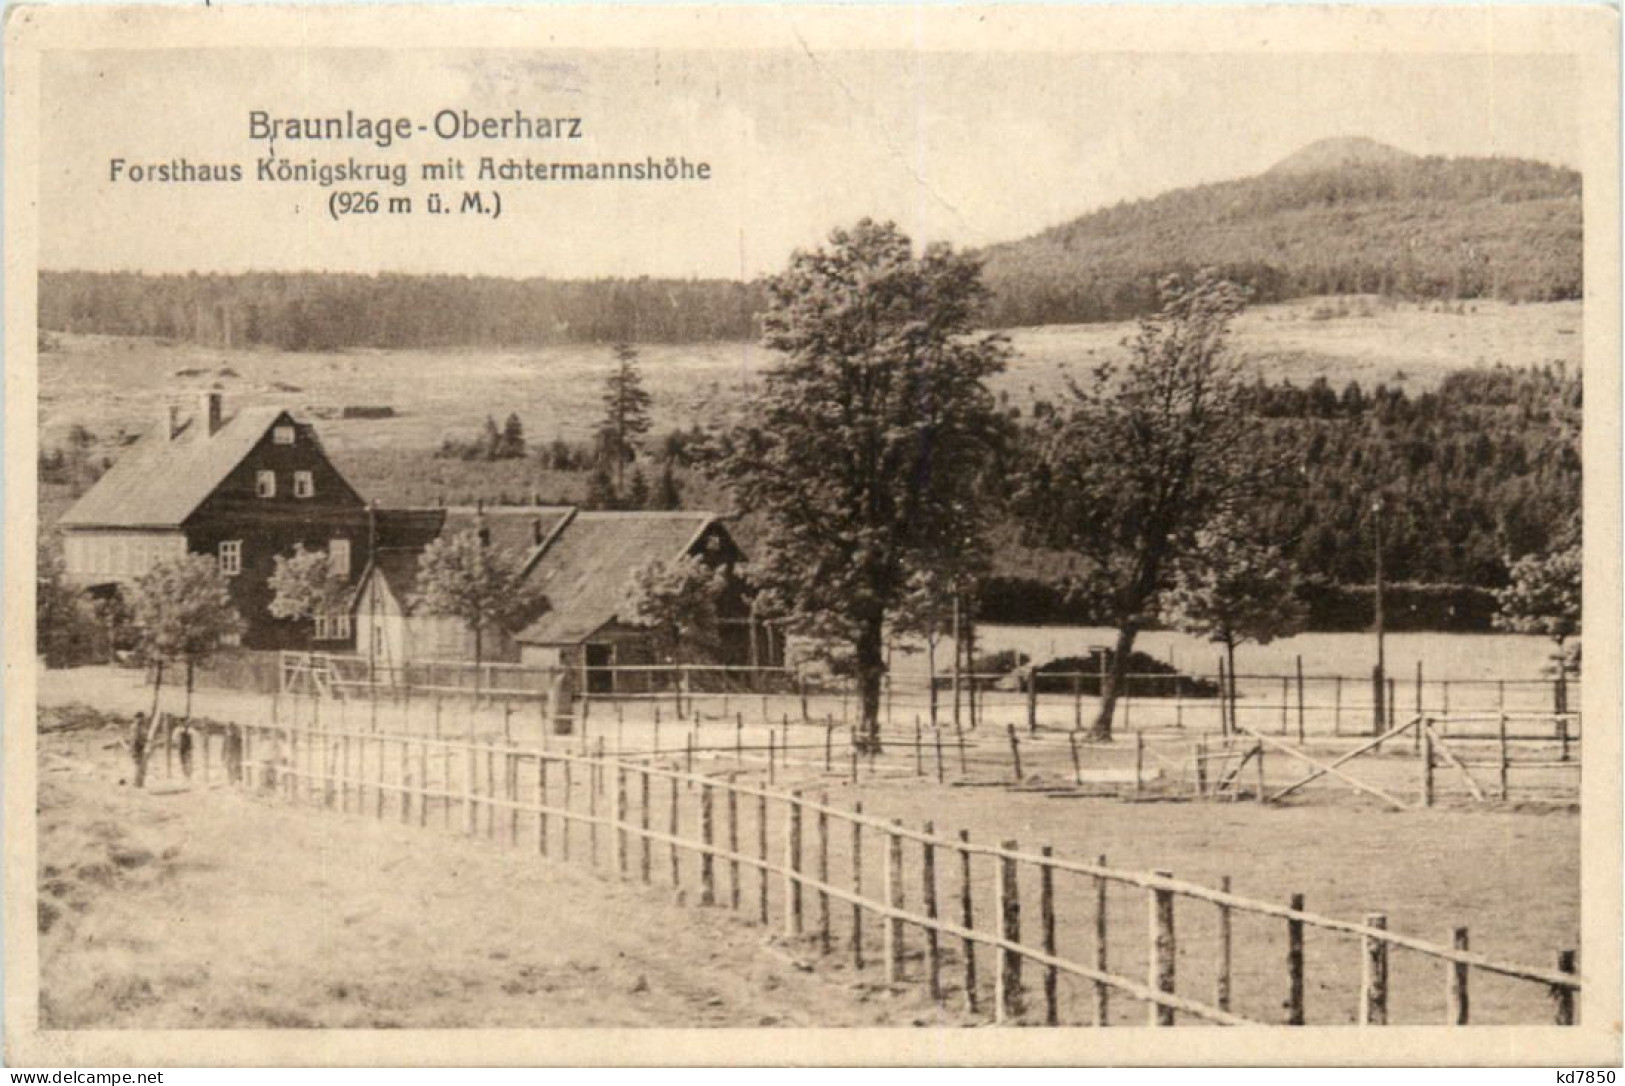 Braunlage-Oberharz, Forsthaus Königskrug - Braunlage